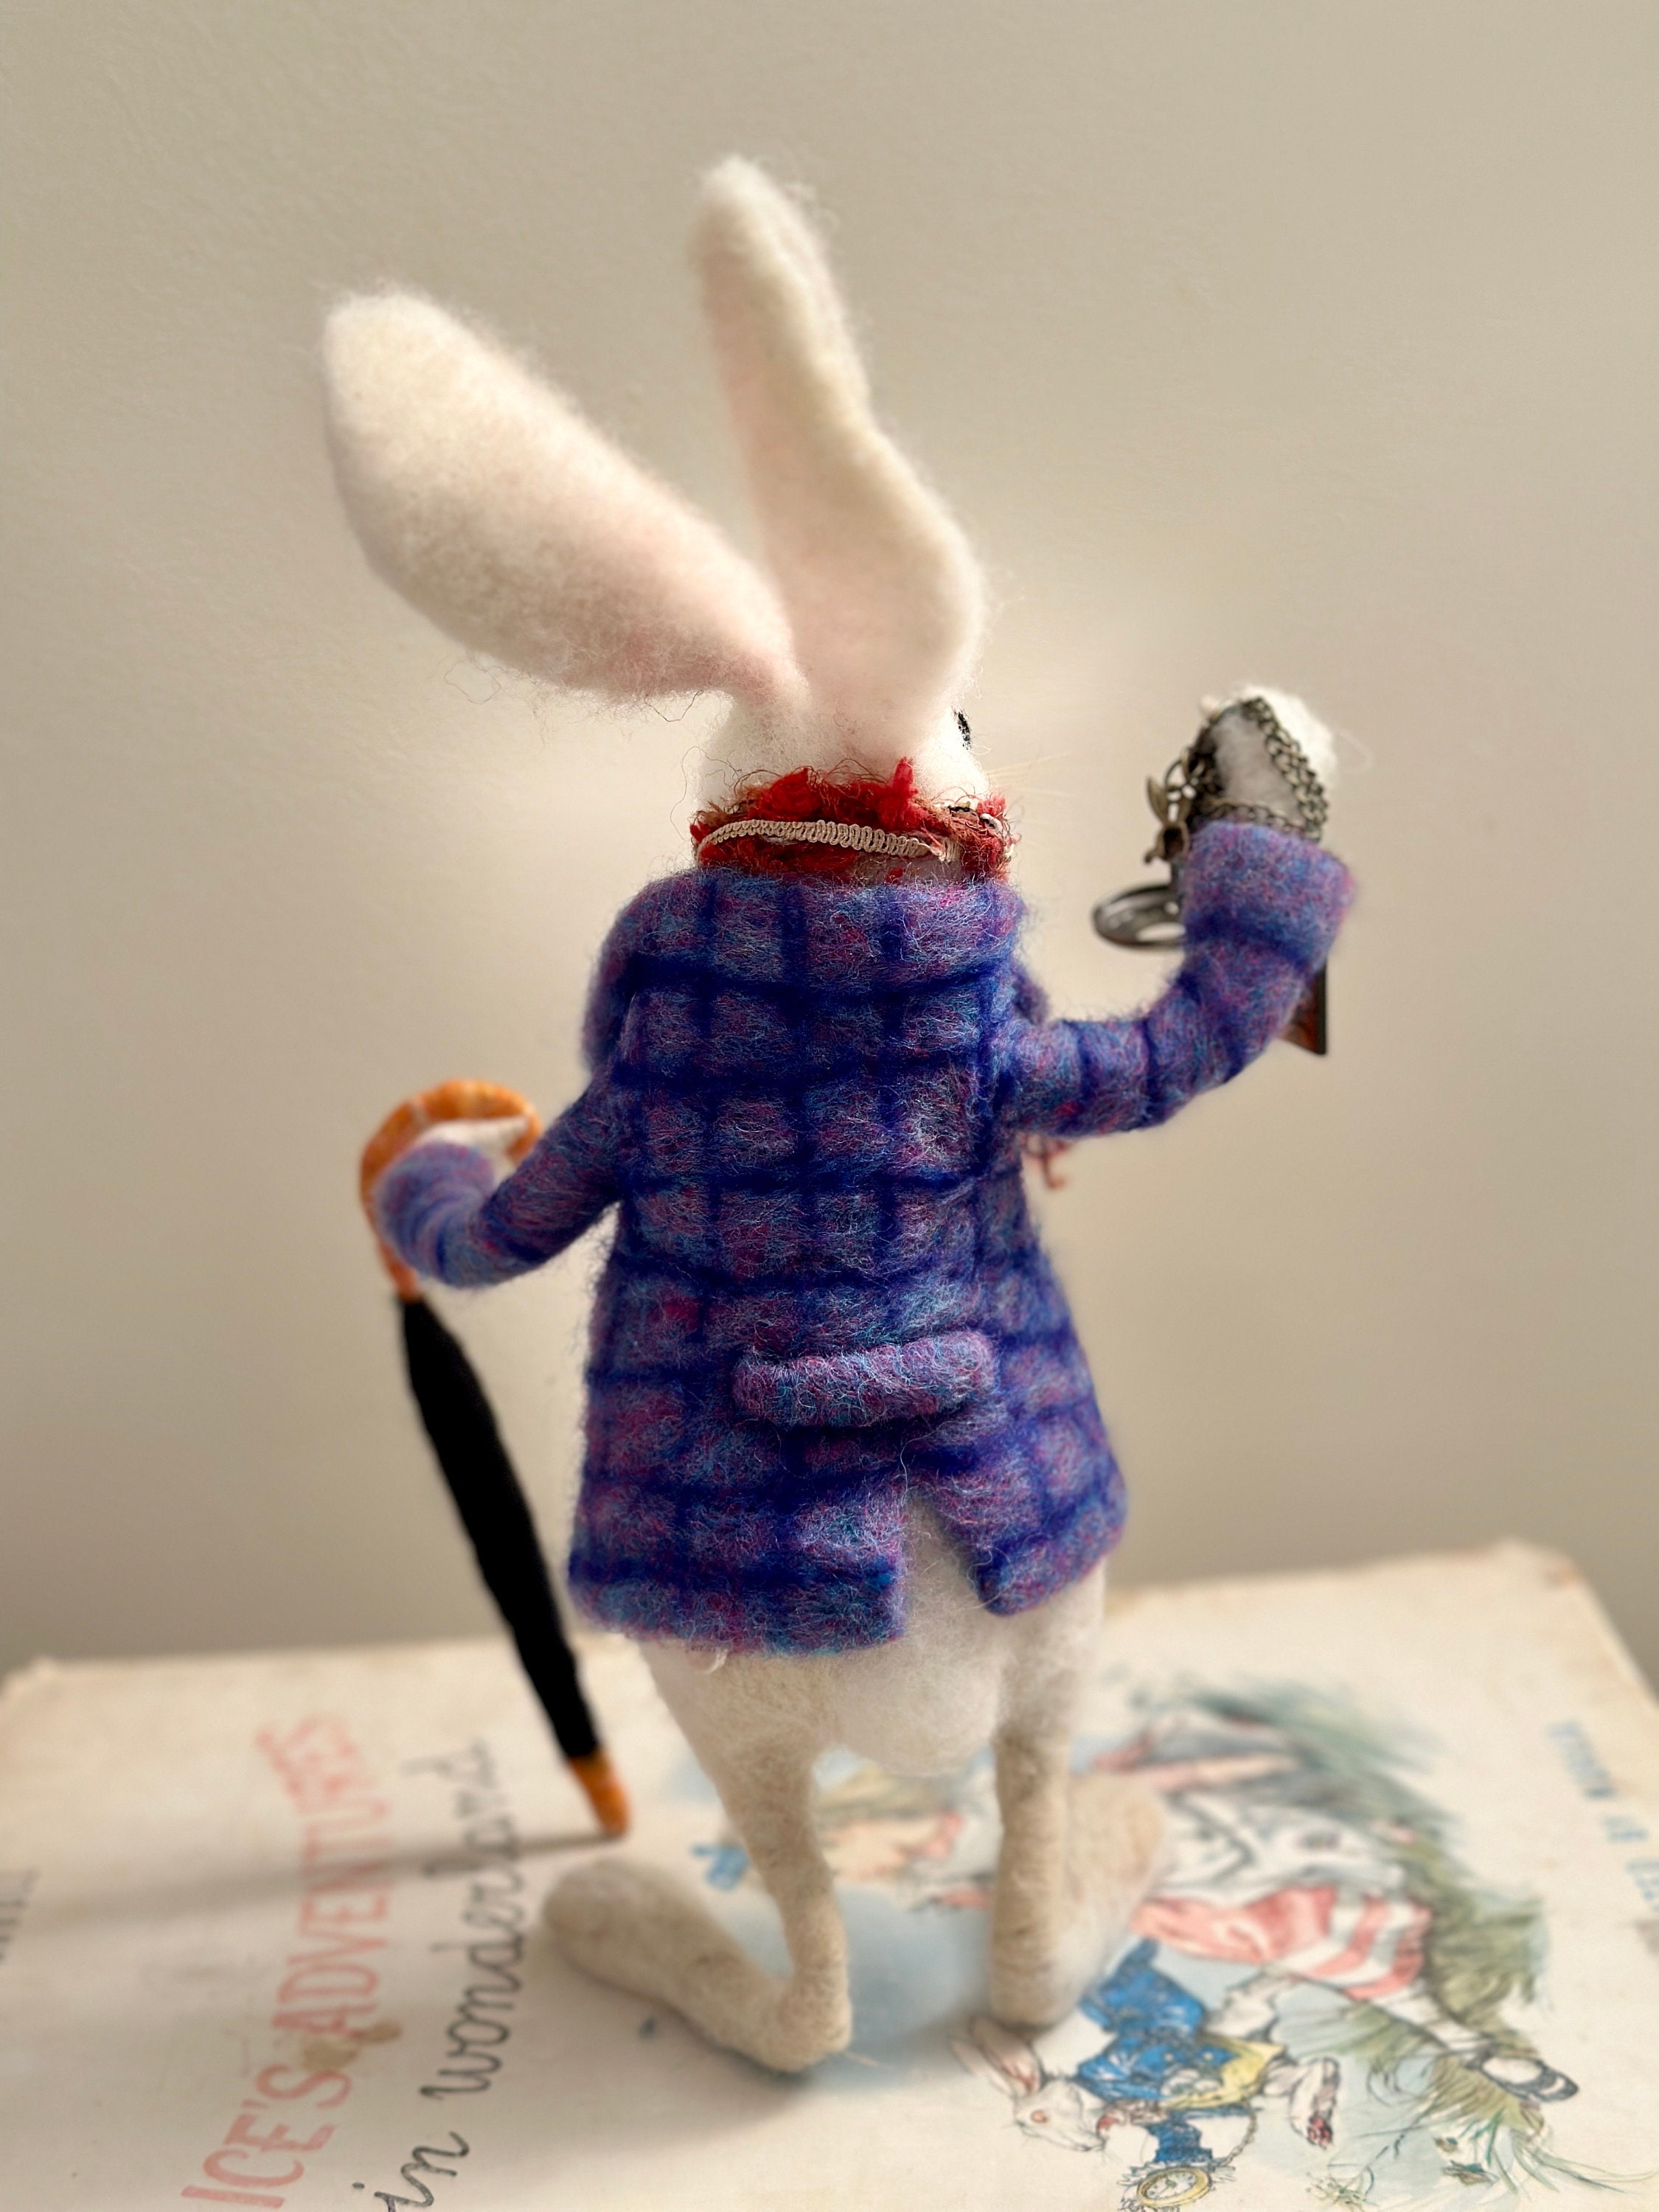 Weißes Kaninchen/OOAK weißes Kaninchen/Filz Kaninchen Art  Doll/Nadelgefilzte Kaninchen/Weiße Kaninchen Ornament/Baby-Dusche-Geschenk/Kinderzimmer  Dekor/Kaninchen Puppe - .de